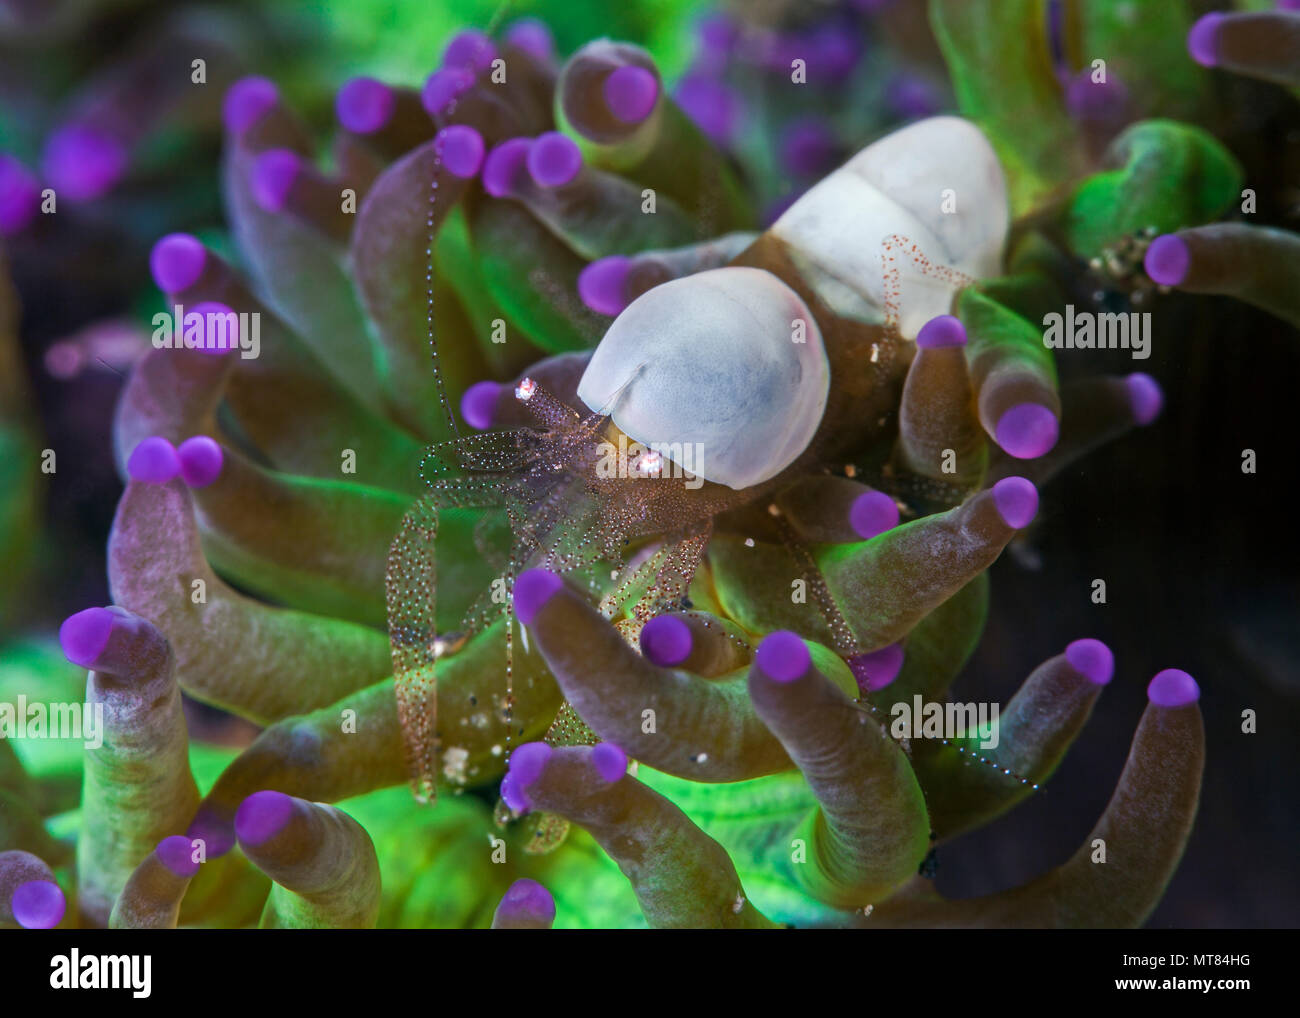 Schließen Sie herauf Bild der Kommensale Eierschale Garnelen (Hamopontonia corallicola) eingebettet in bioluminescent Tentakeln der Host Coral. Lembeh Straits, Indonesien. Stockfoto